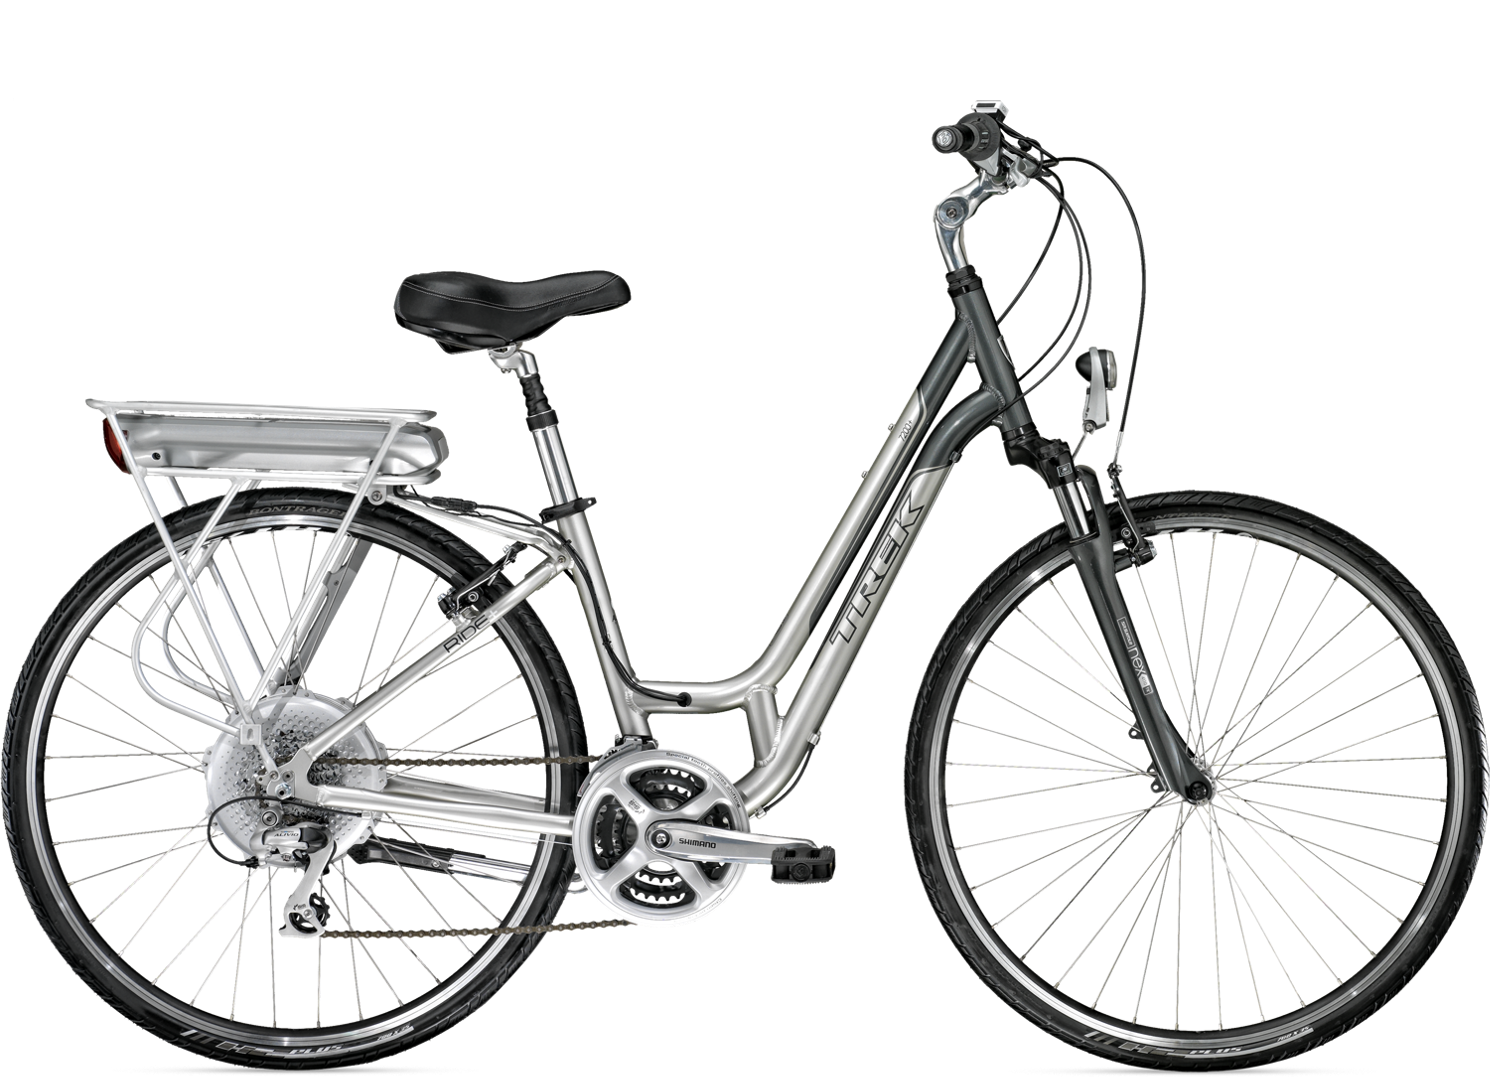 parrilla Finanzas doblado 2012 7200+ WSD - Bike Archive - Trek Bicycle